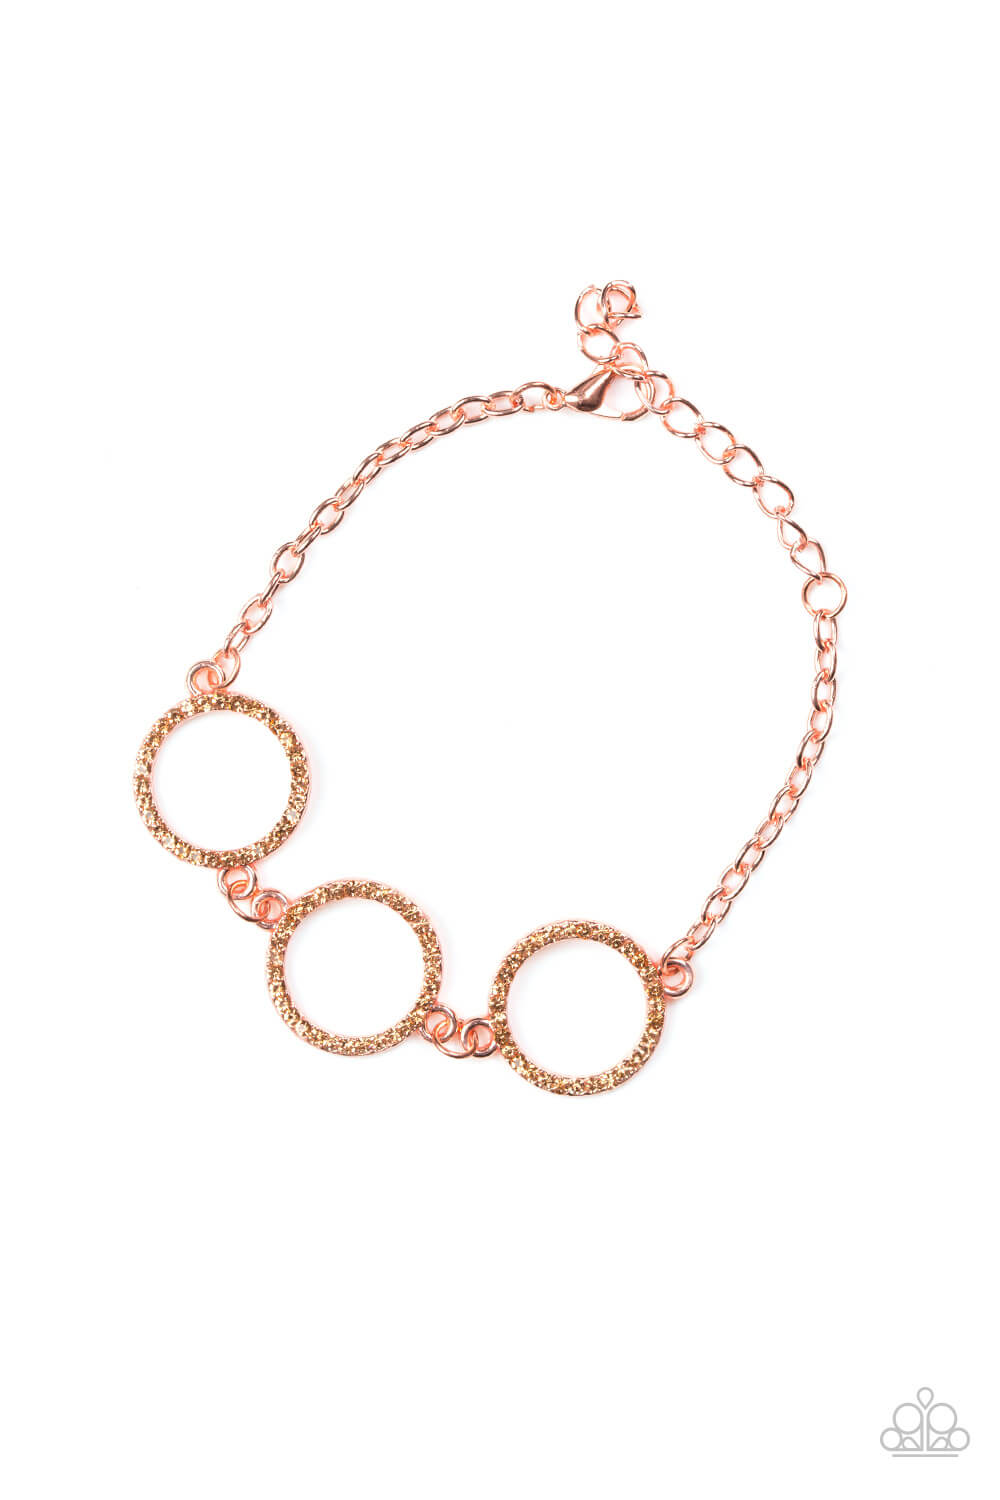 Dress The Part - Copper Bracelet - Princess Glam Shop